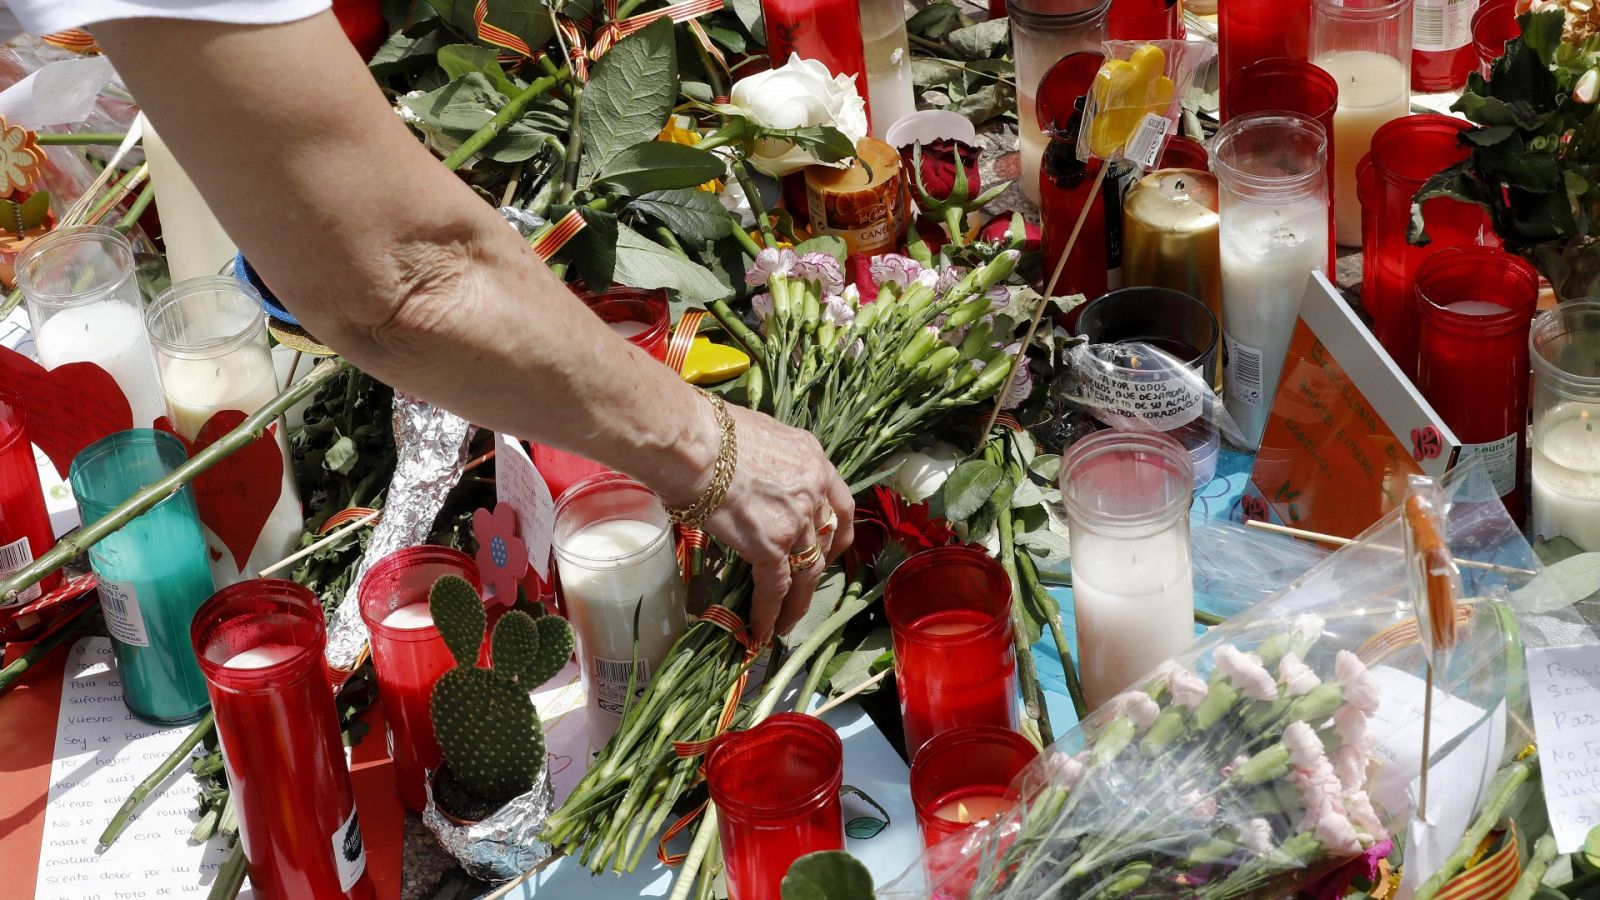 El padre del niño muerto en el atentado de Barcelona: "Mi vida quedó rota en Las Ramblas"